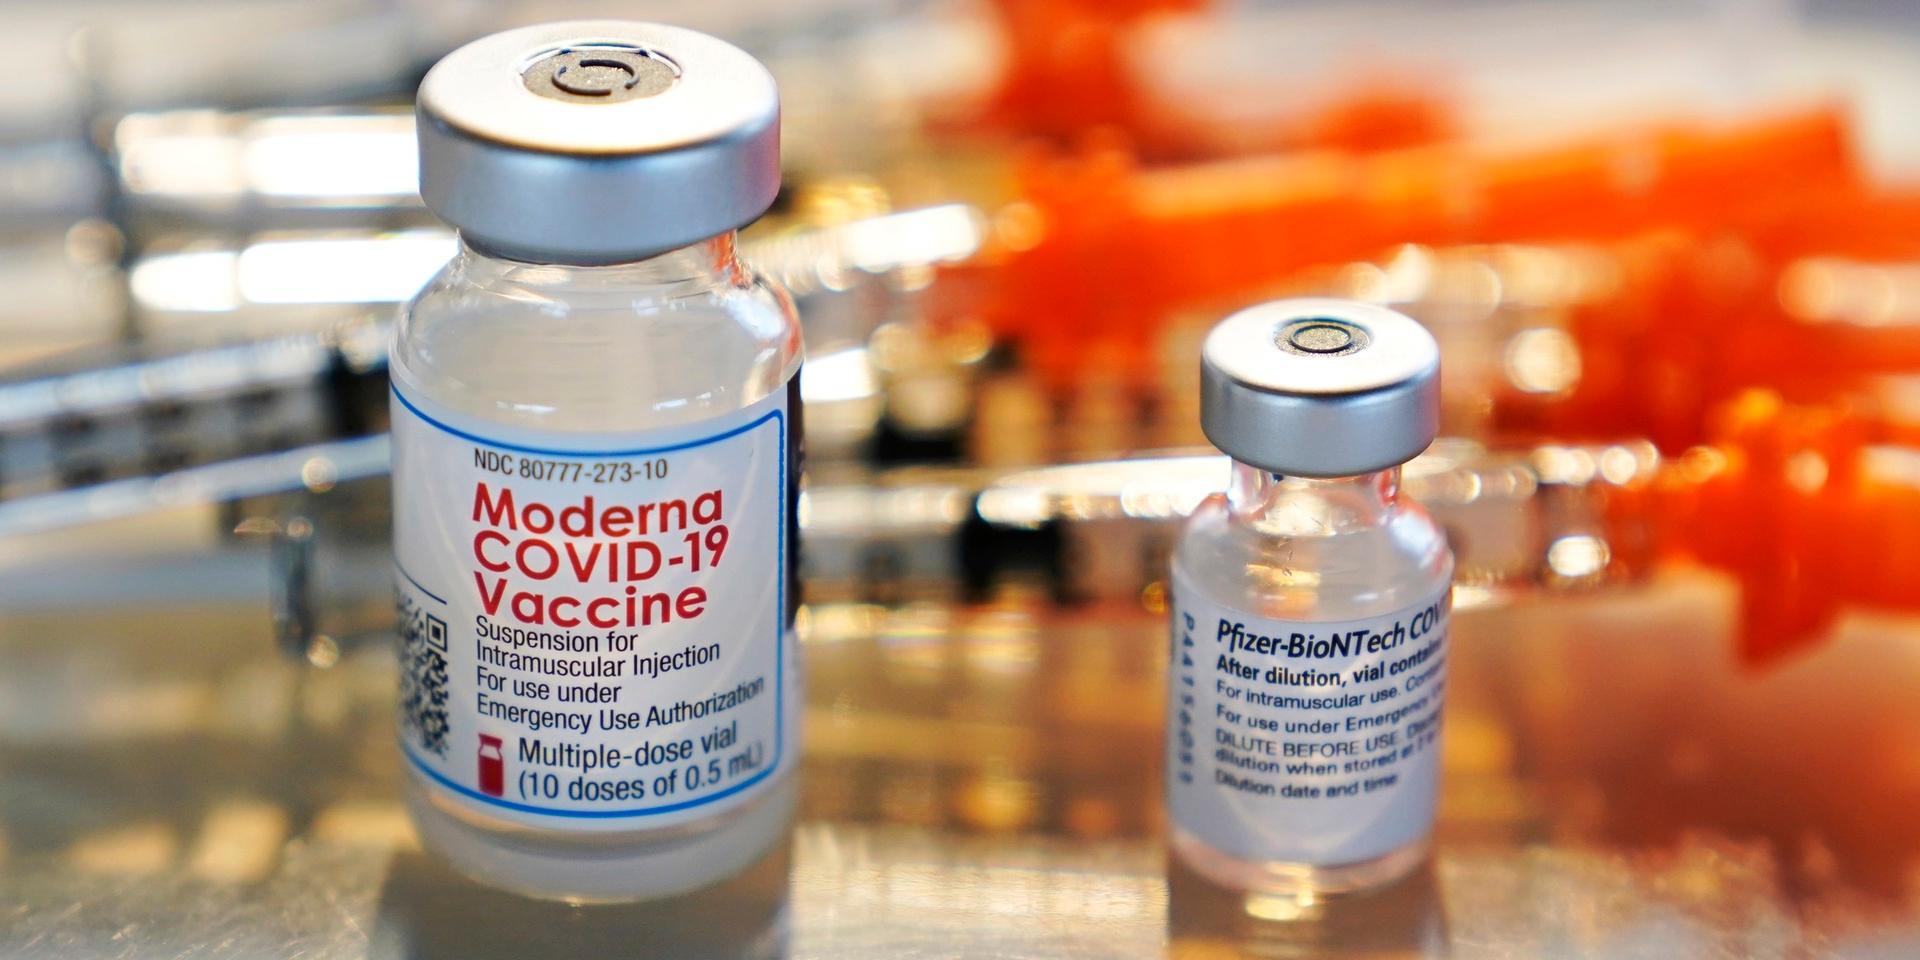 Vaccinerna från Moderna, Spikevax, och Pfizer-Biontech, Comirnaty, mot covid-19.